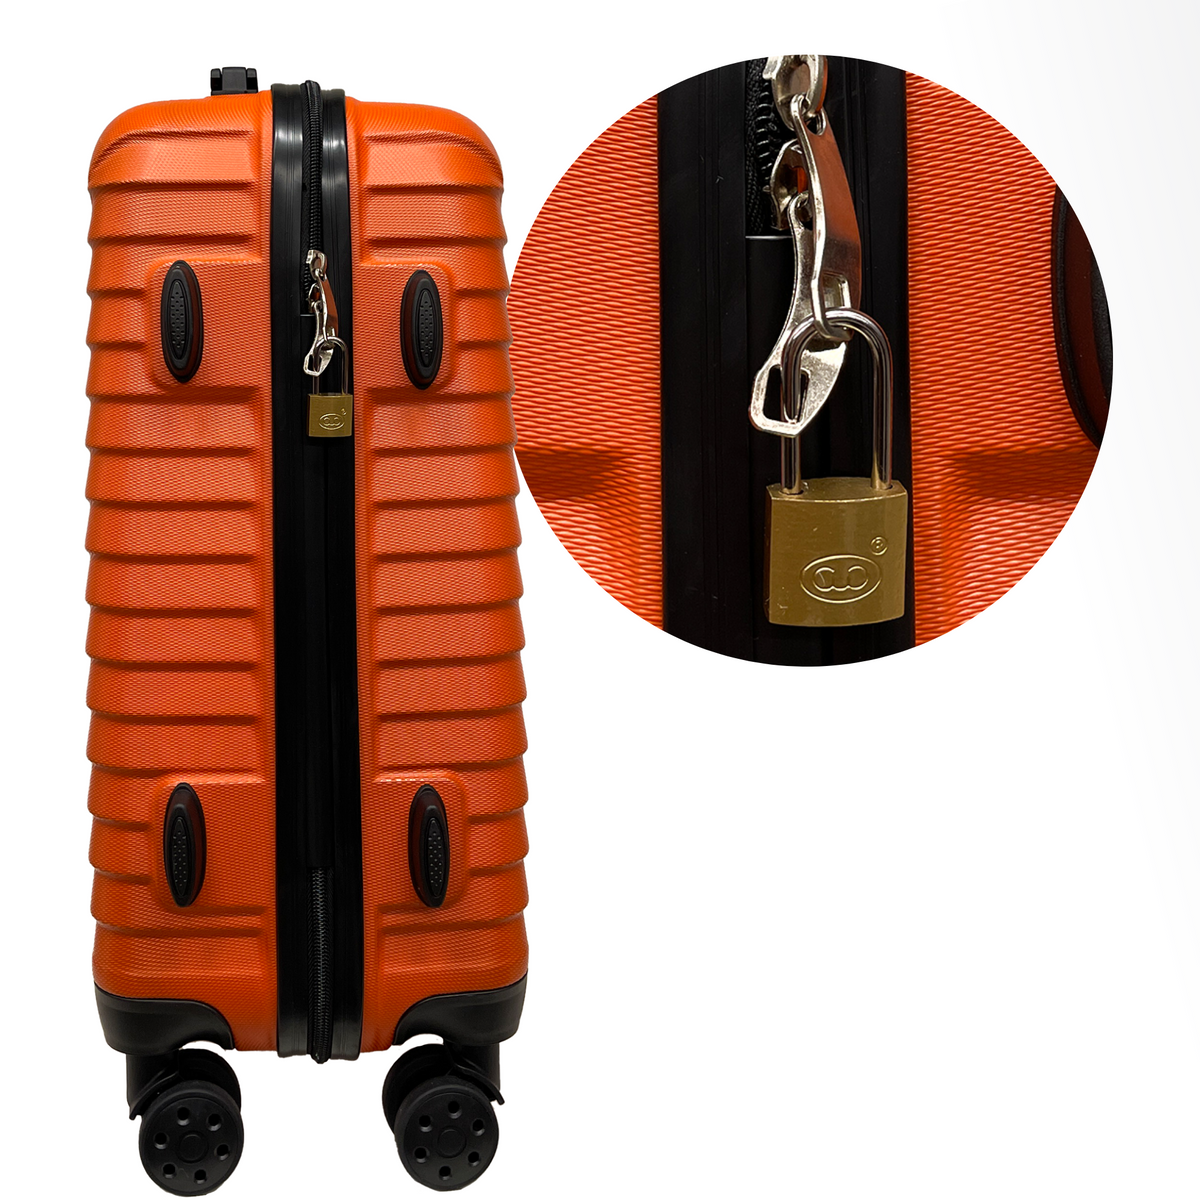 Închizătoare cu zăvor lung de 25 mm și 2 chei - Siguranță pentru valiză, bagaje, geantă de călătorie și rucsac